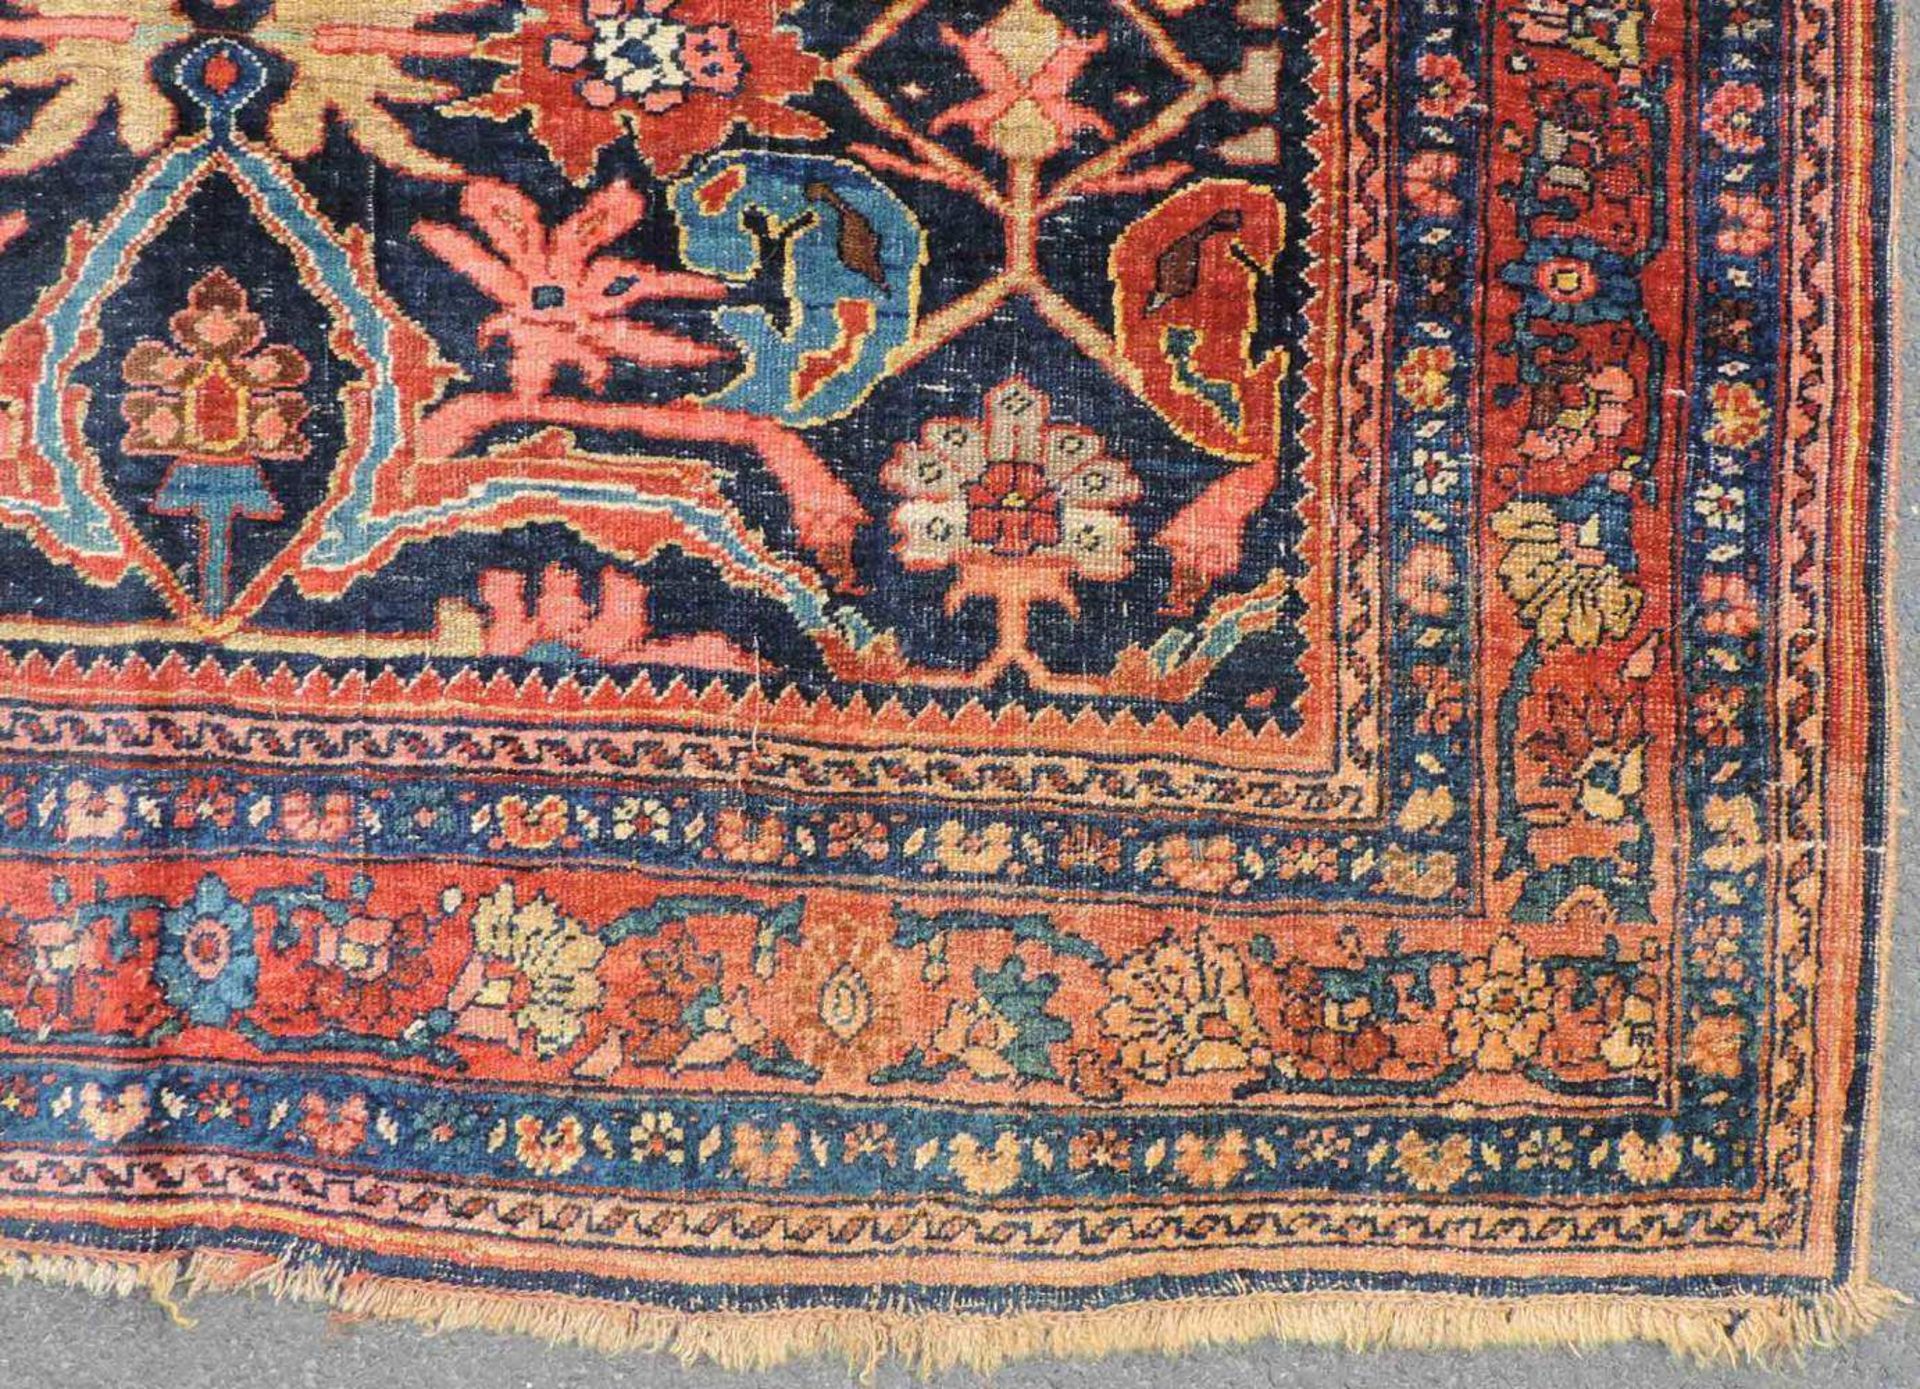 Bidjar Dorfteppich, Iran. Antik, um 1900. 214 cm x 160 cm. Handgeknüpft in Persien. Noch Wolle auf - Image 5 of 11